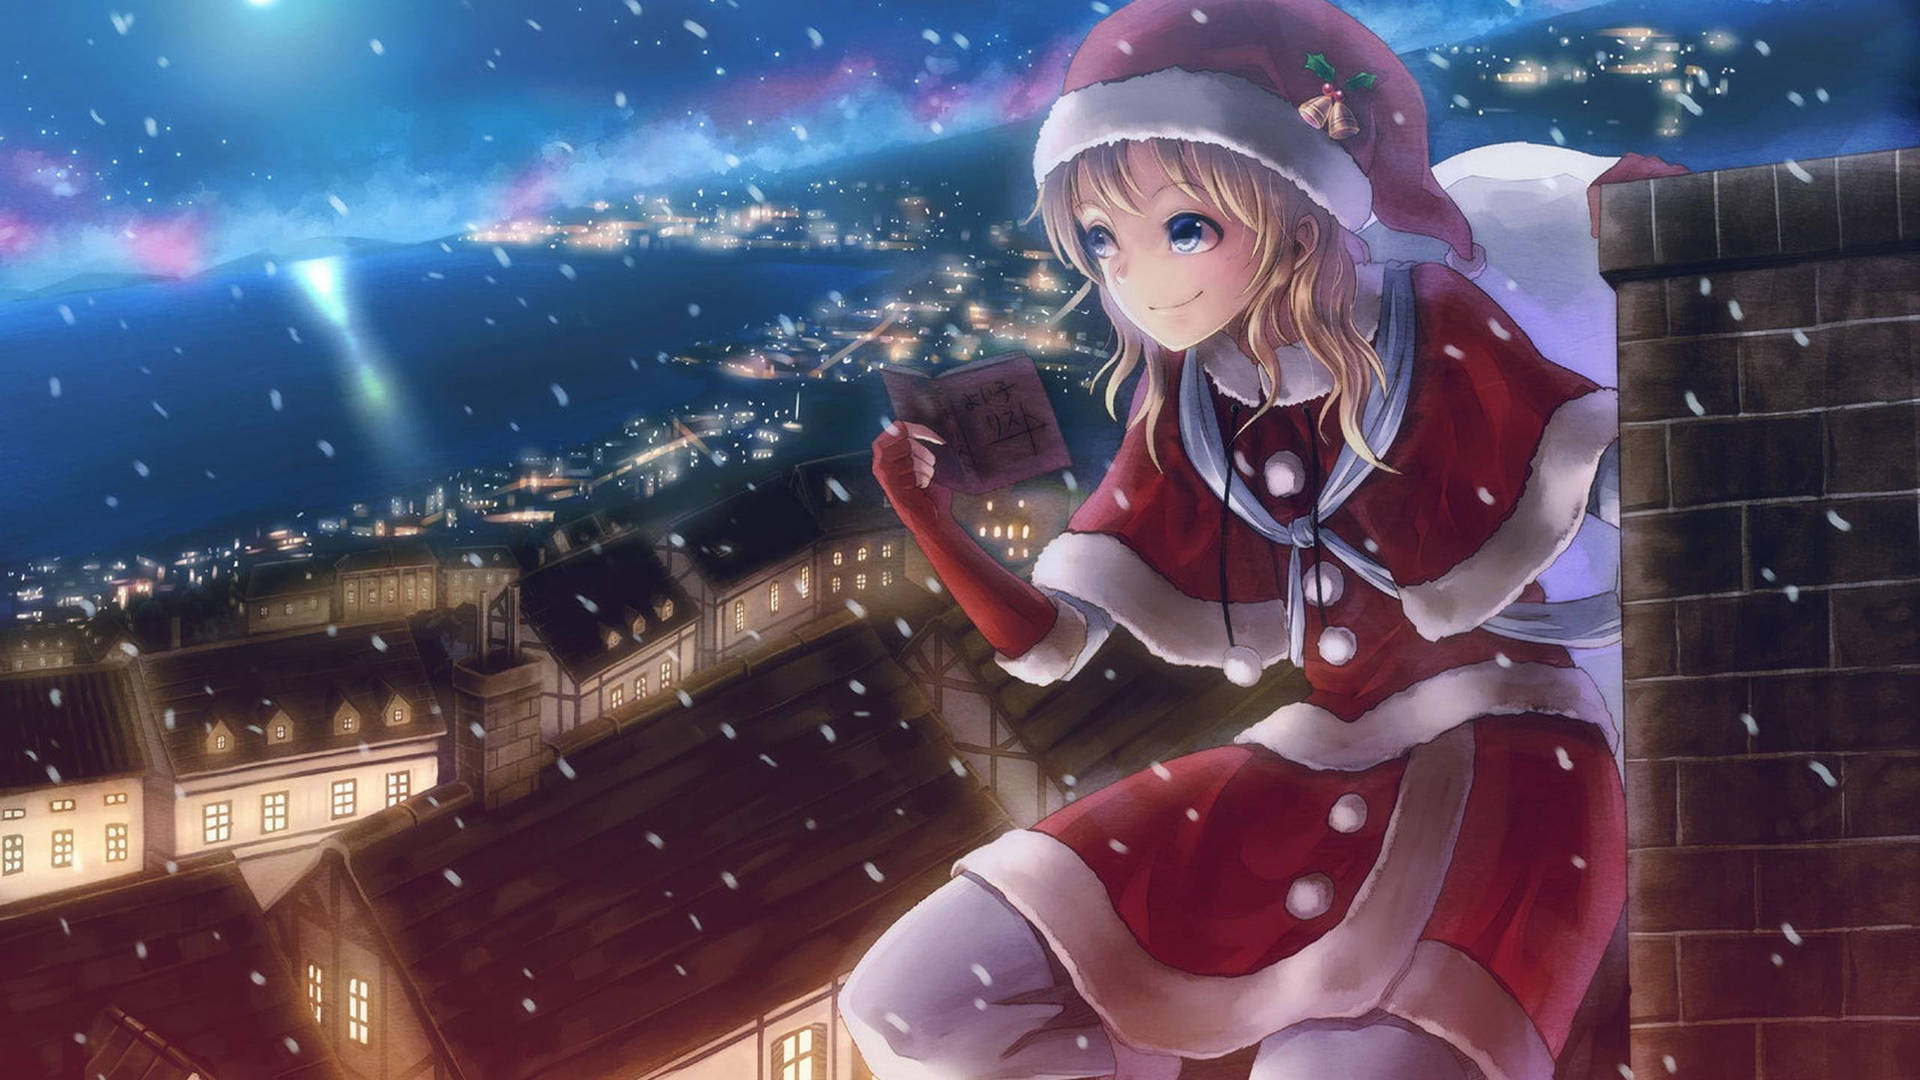 Anime Christmas Santa Girl On Chimney